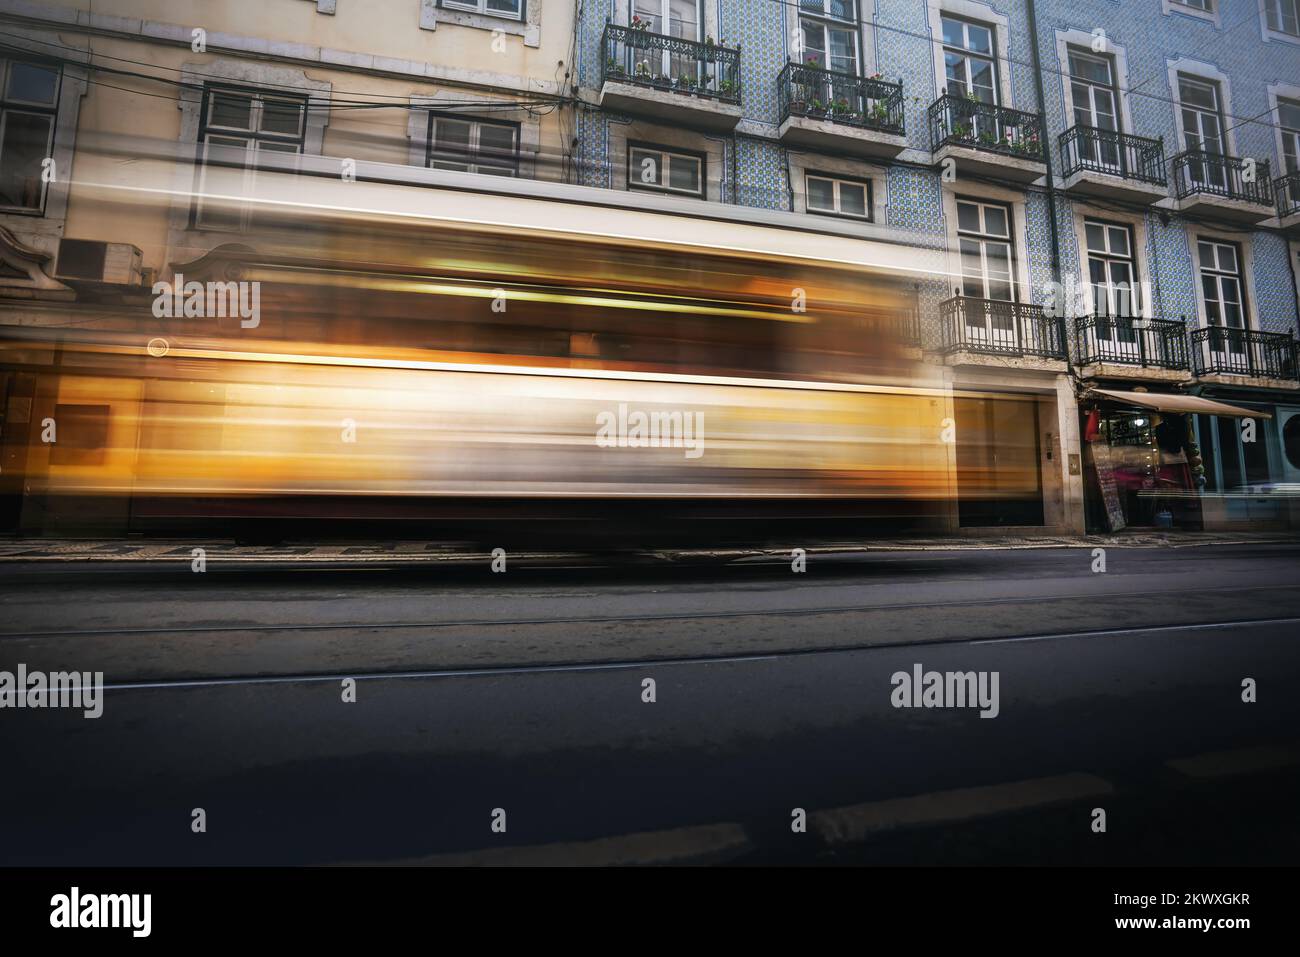 Piste de tramway jaune dans une rue de Lisbonne - Lisbonne, Portugal Banque D'Images